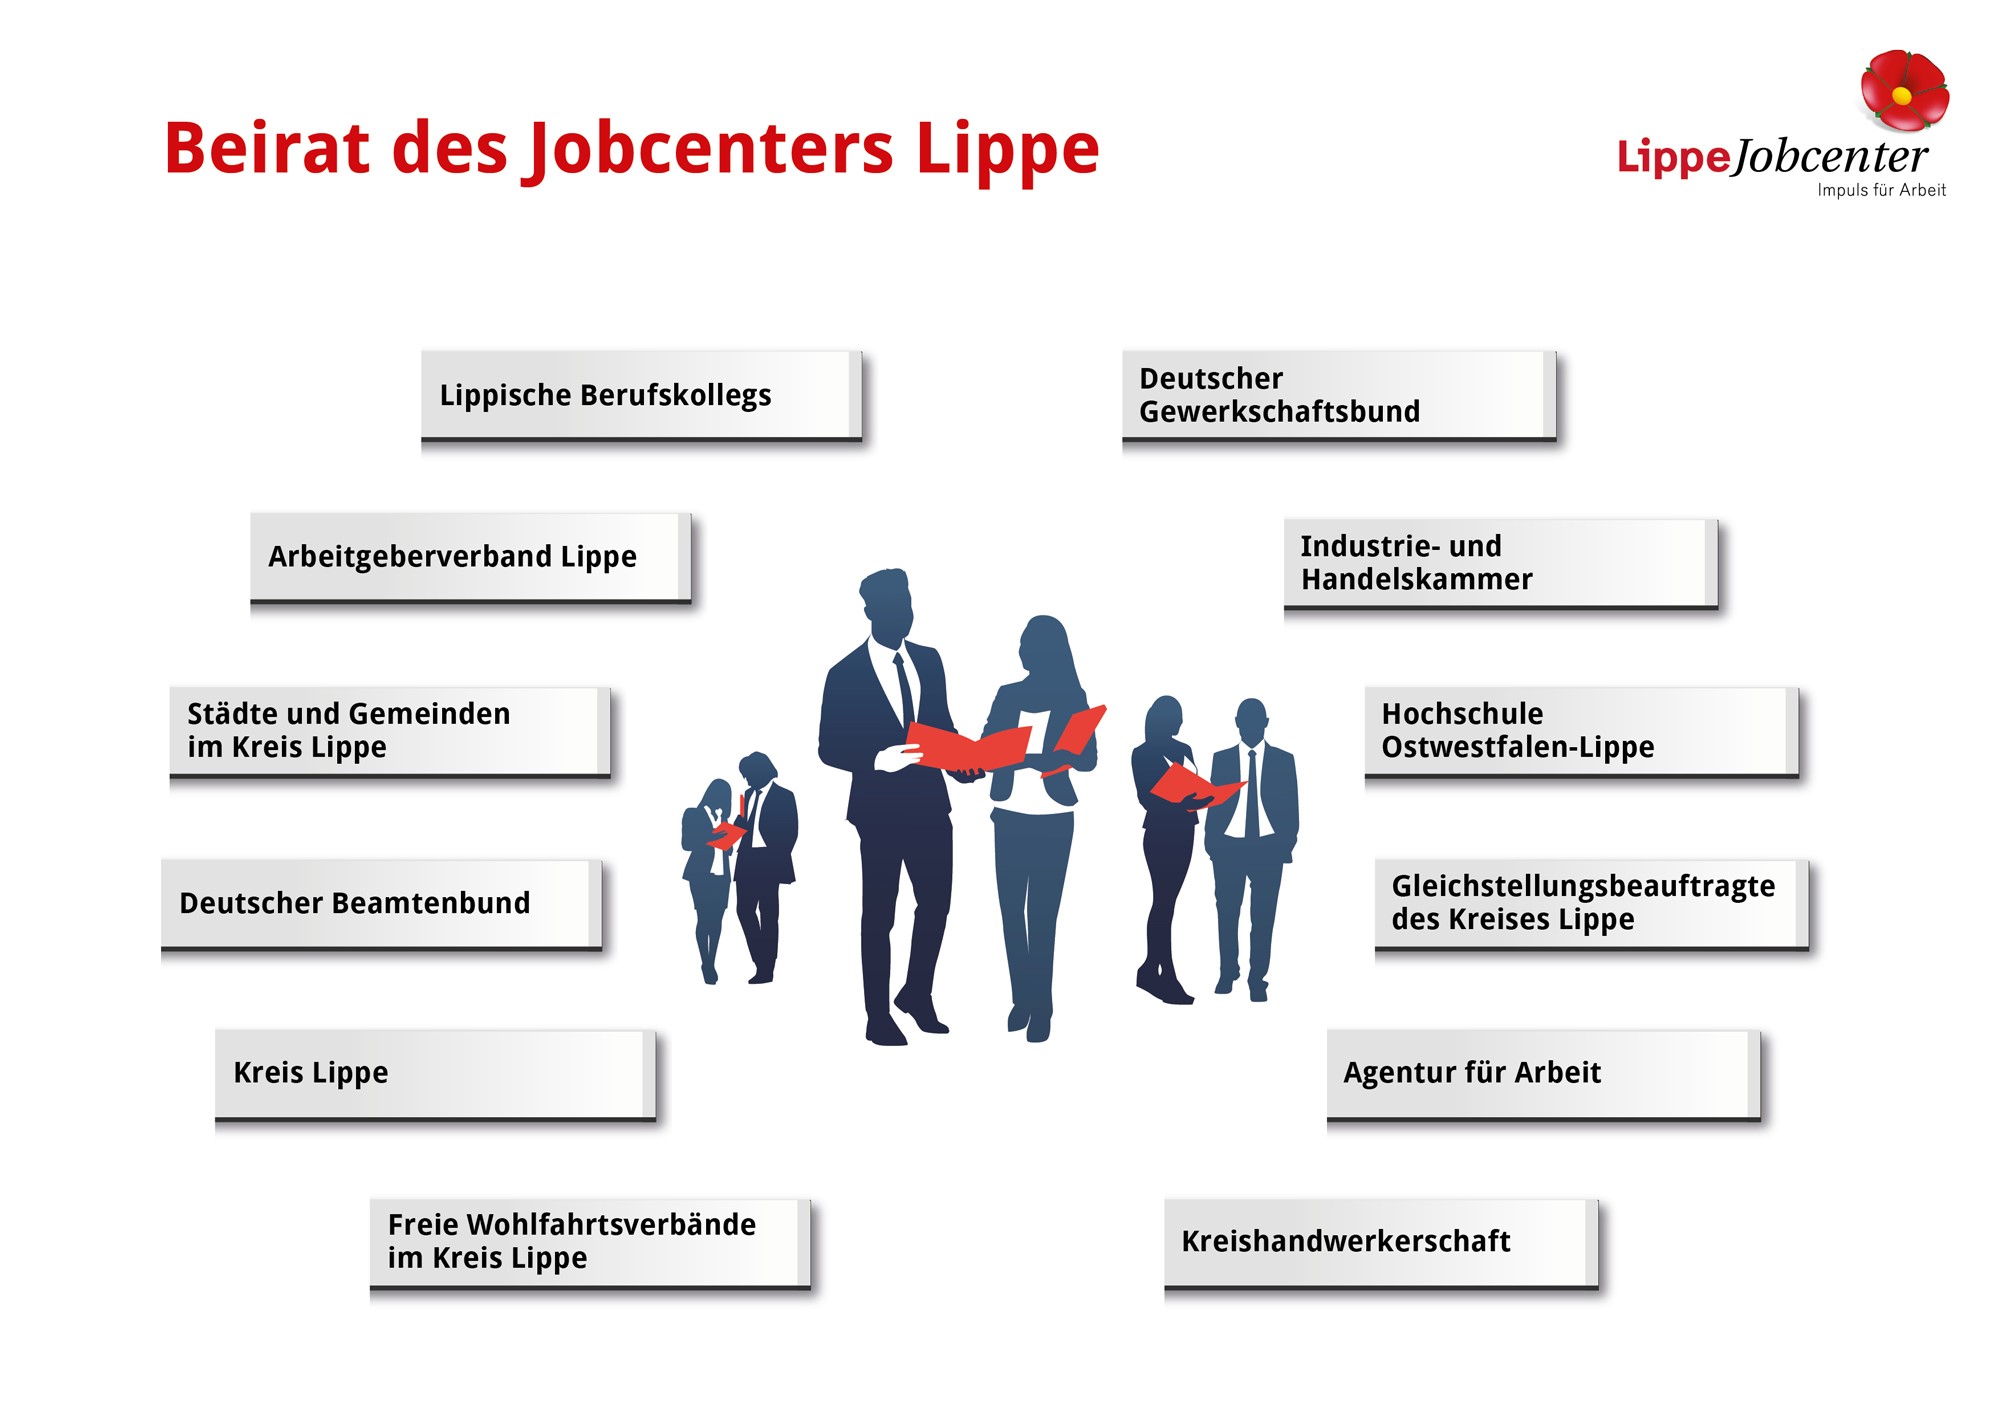 Beirat Jobcenter Lippe